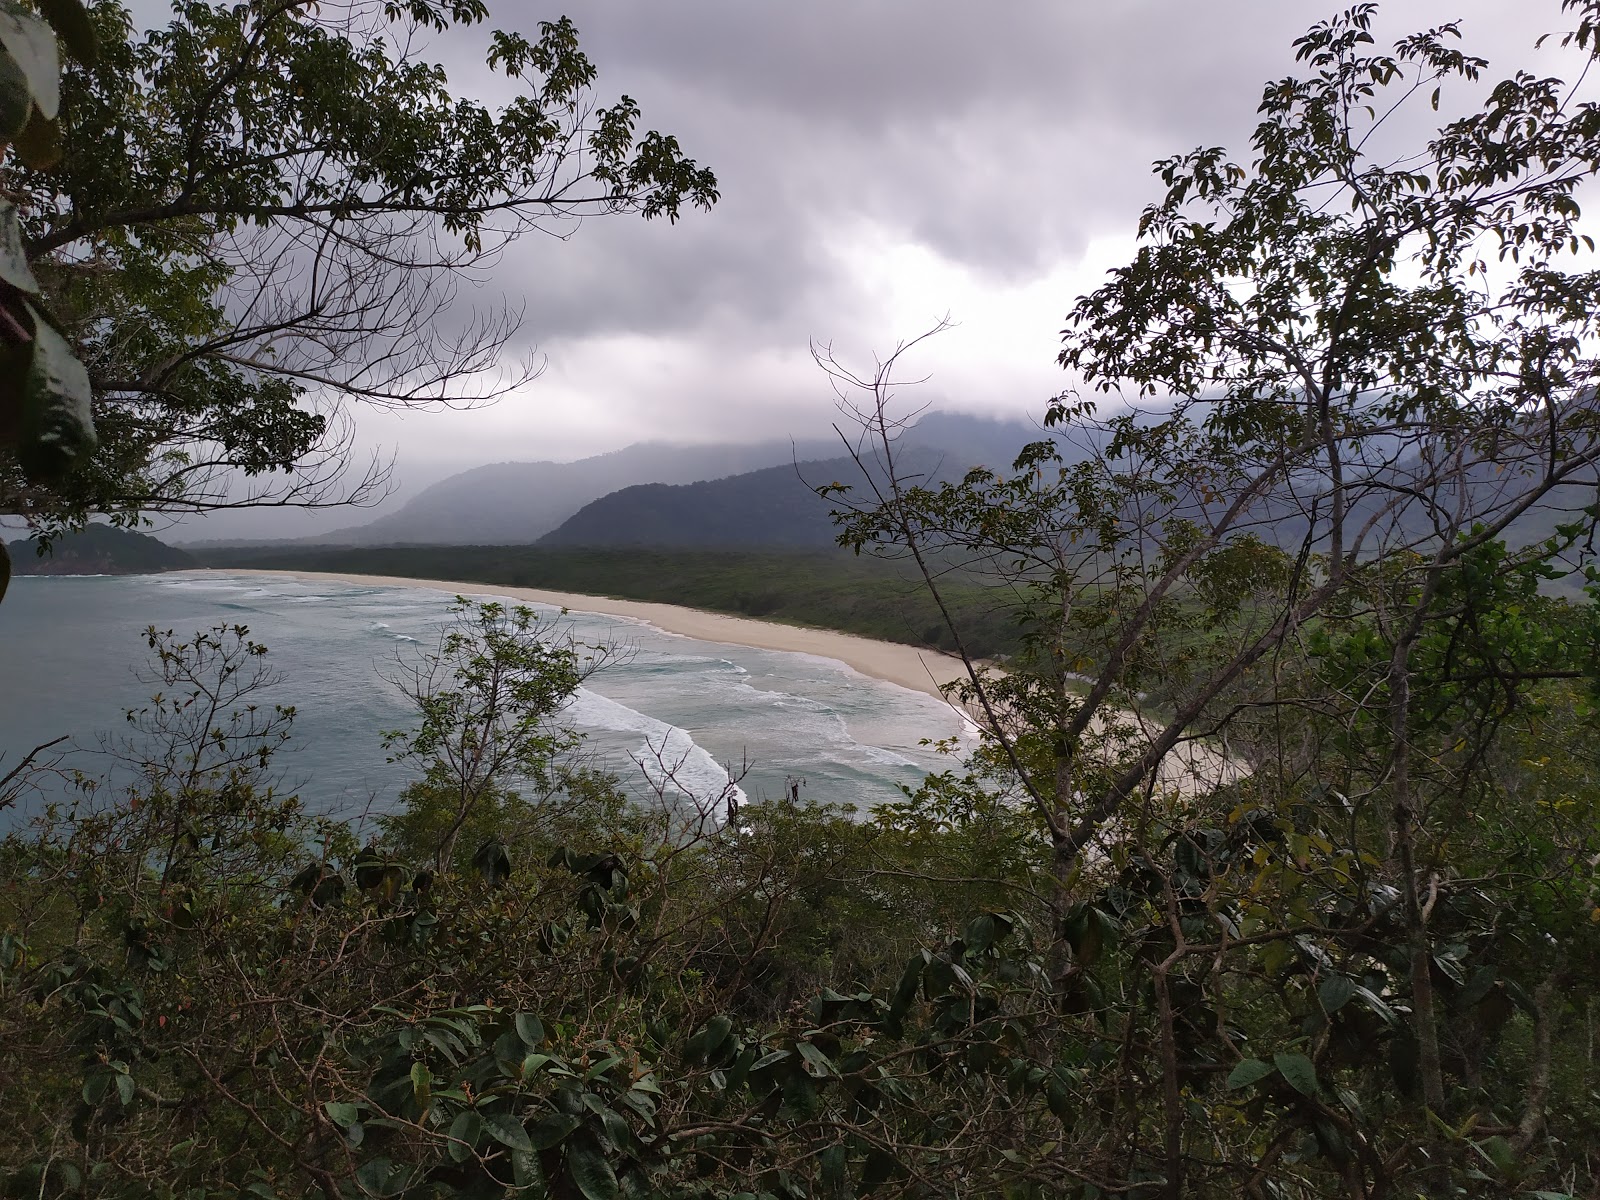 Fotografie cu Praia do Leste - locul popular printre cunoscătorii de relaxare